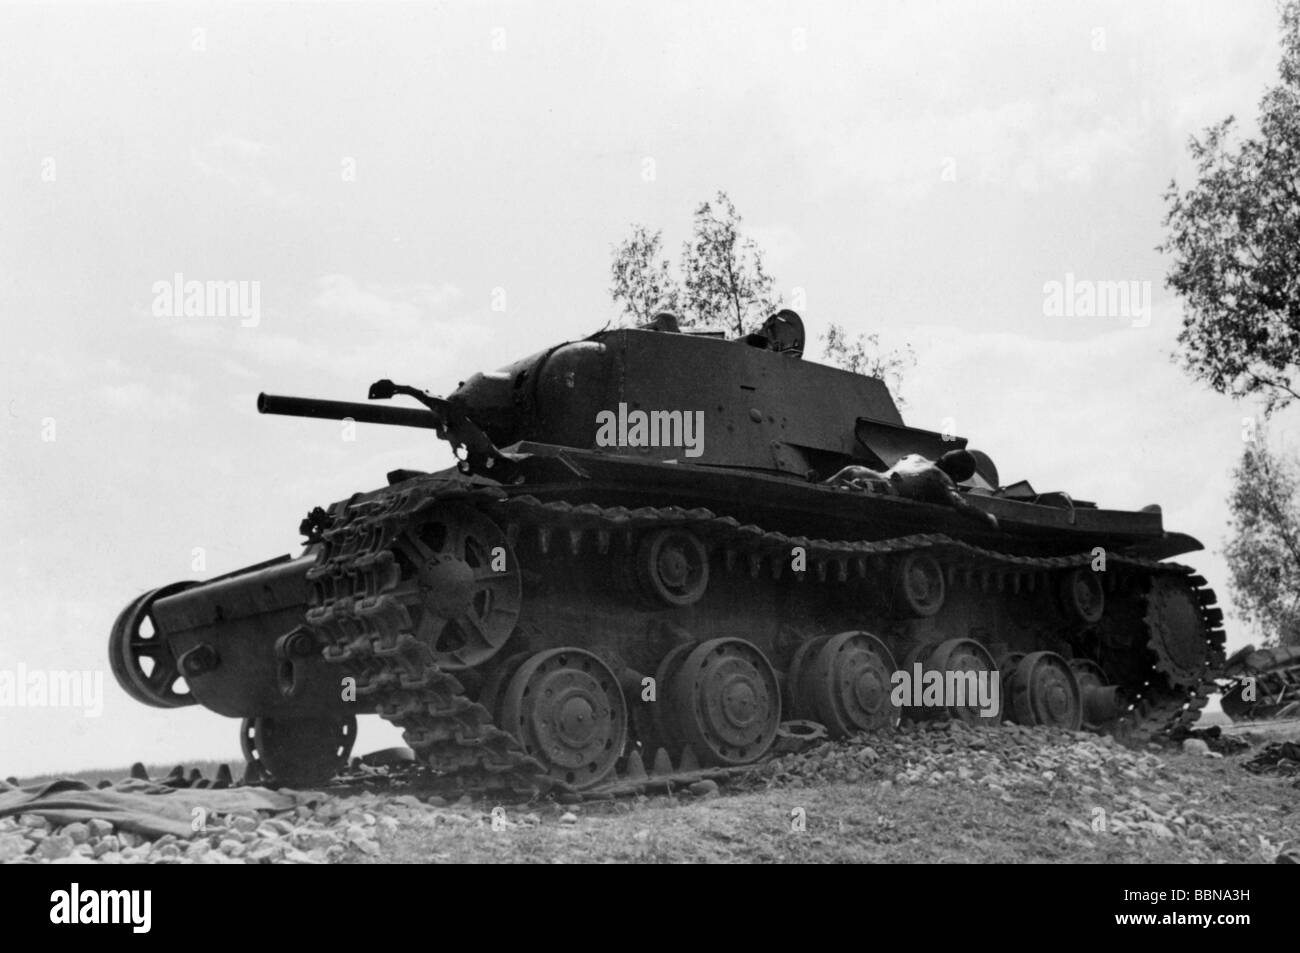 Ereignisse, Zweiter Weltkrieg/zweiter Weltkrieg, Russland 1941, zerstörten sowjetischen Panzer KV-1 nach einem deutschen luftangriff auf die Straße Bialystok - Vaukavysk, Sommer 1941, Stockfoto